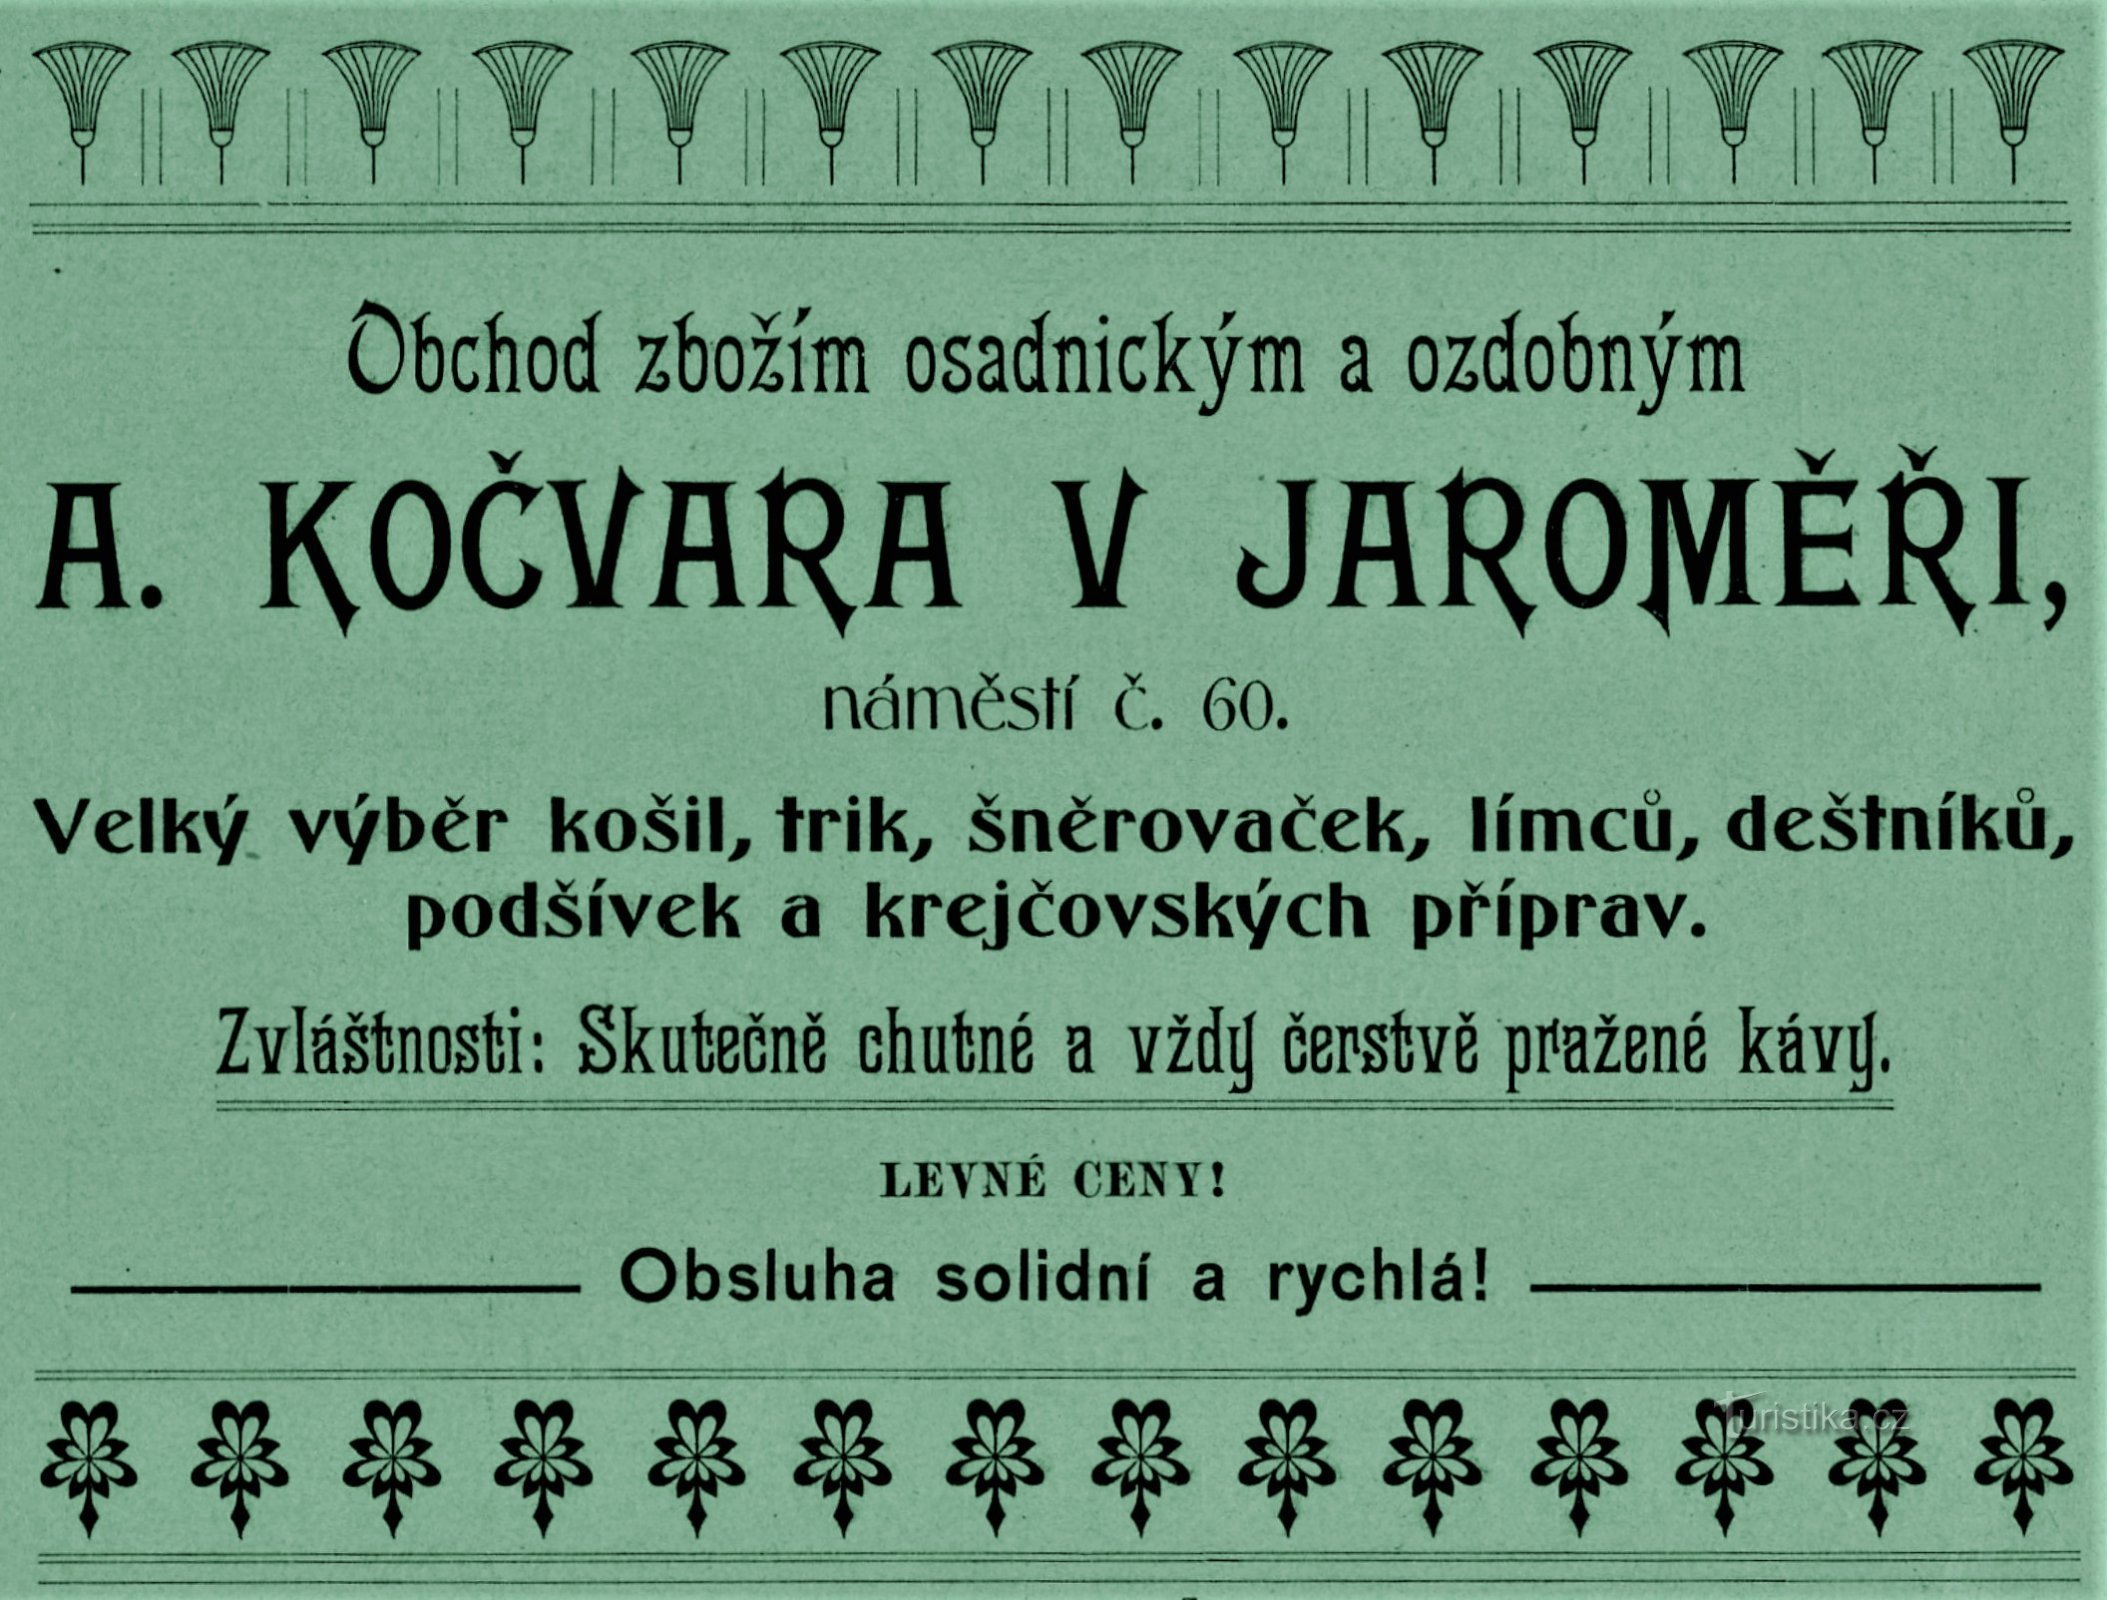 1903 年在 Jaroměř 的 A. Kočvara 公司的当代广告